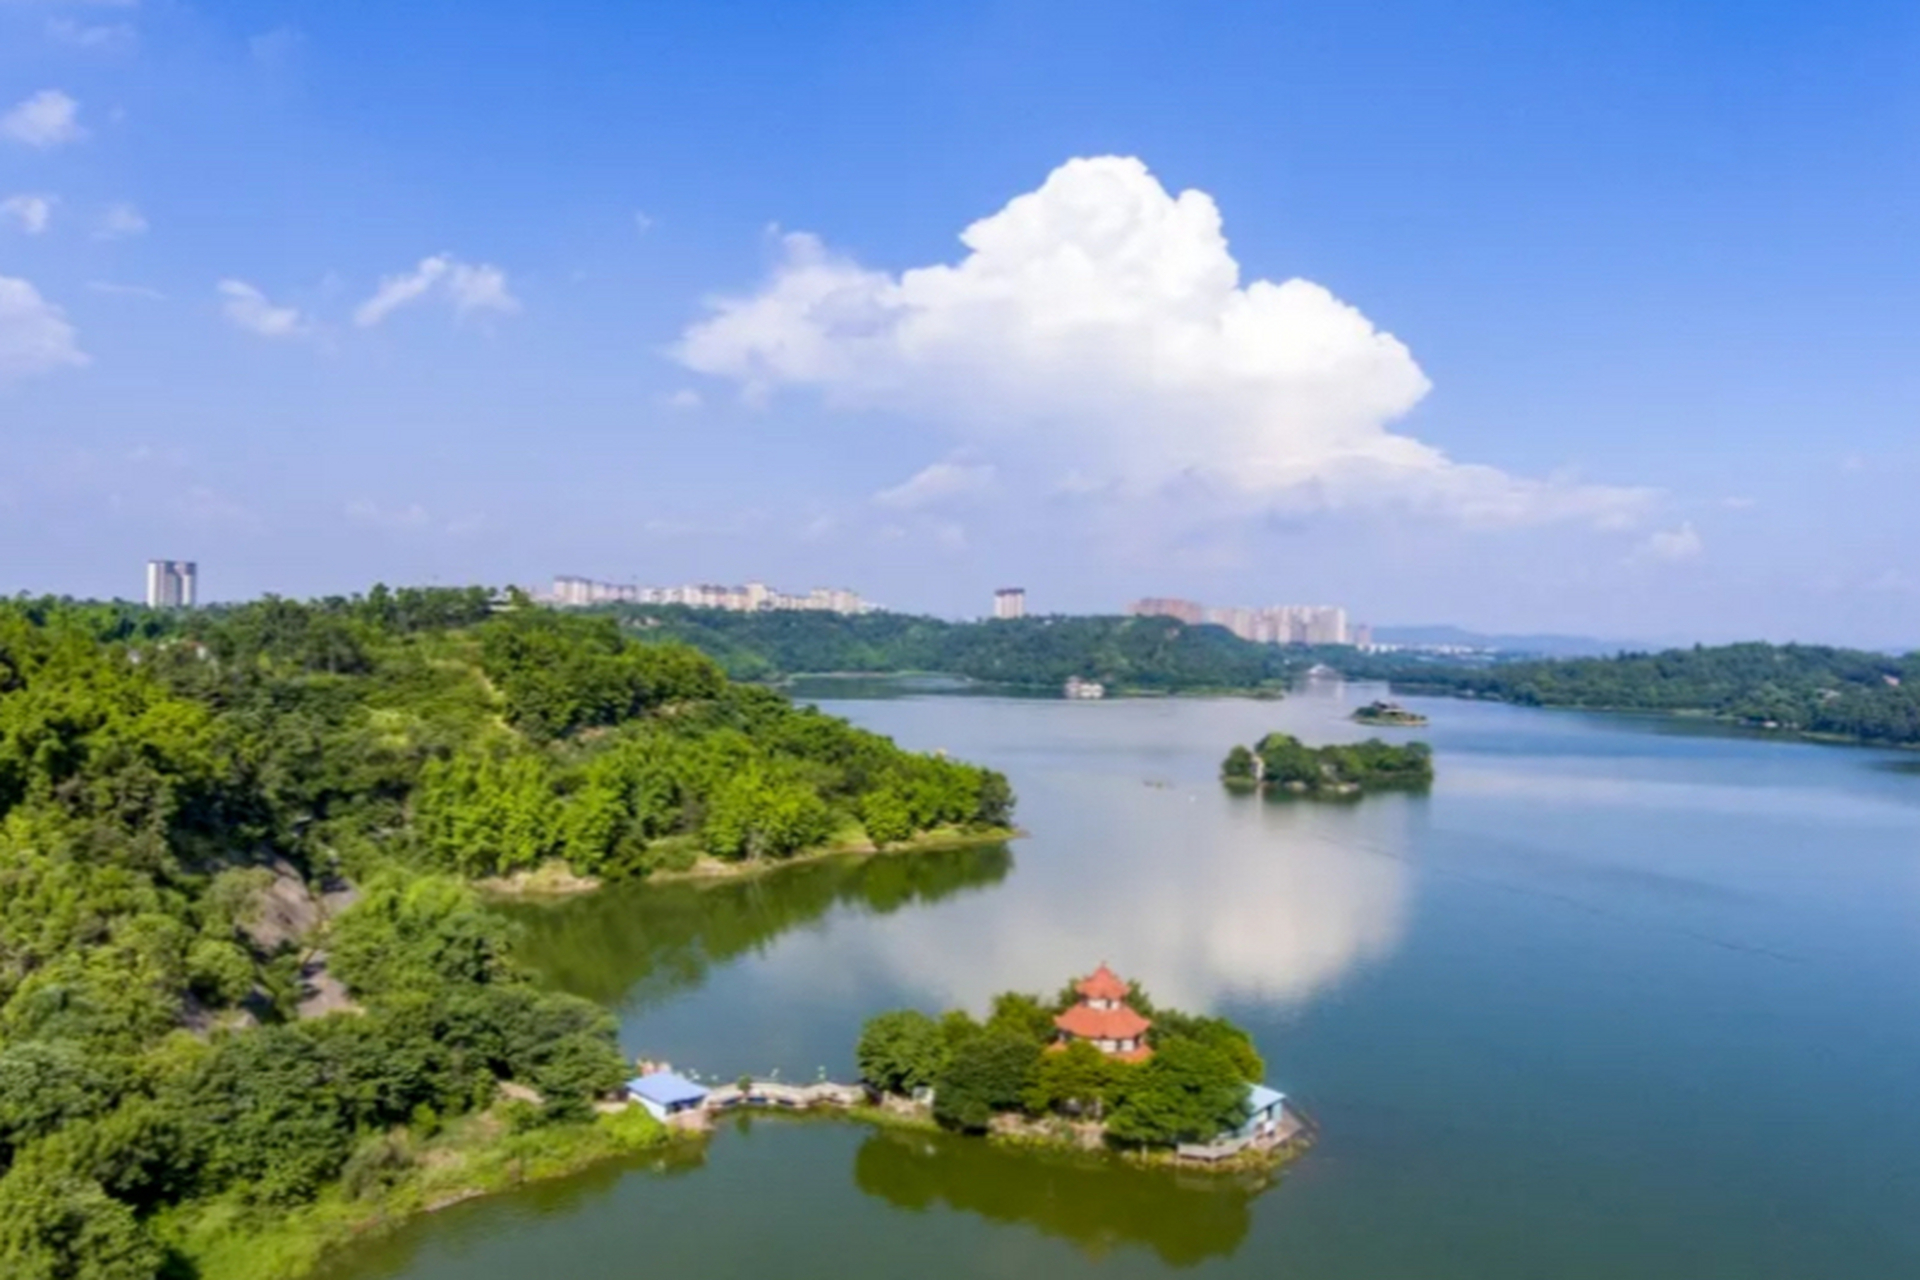 隆昌古宇湖照片图片